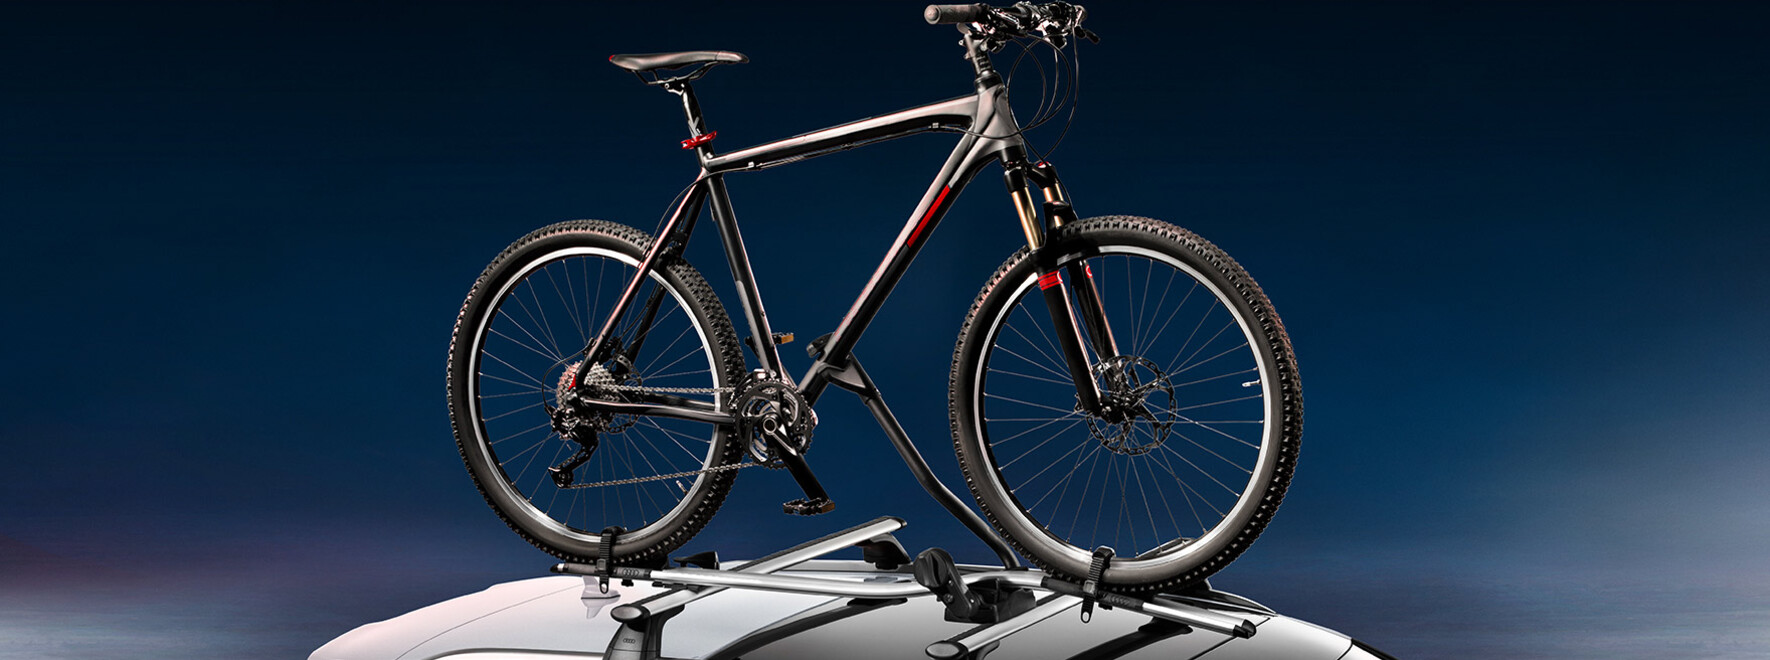 Fahrradträger für 1 Rad von Audi Original Zubehör | Fahrradträger für 1 Rad zzgl. Grundträger